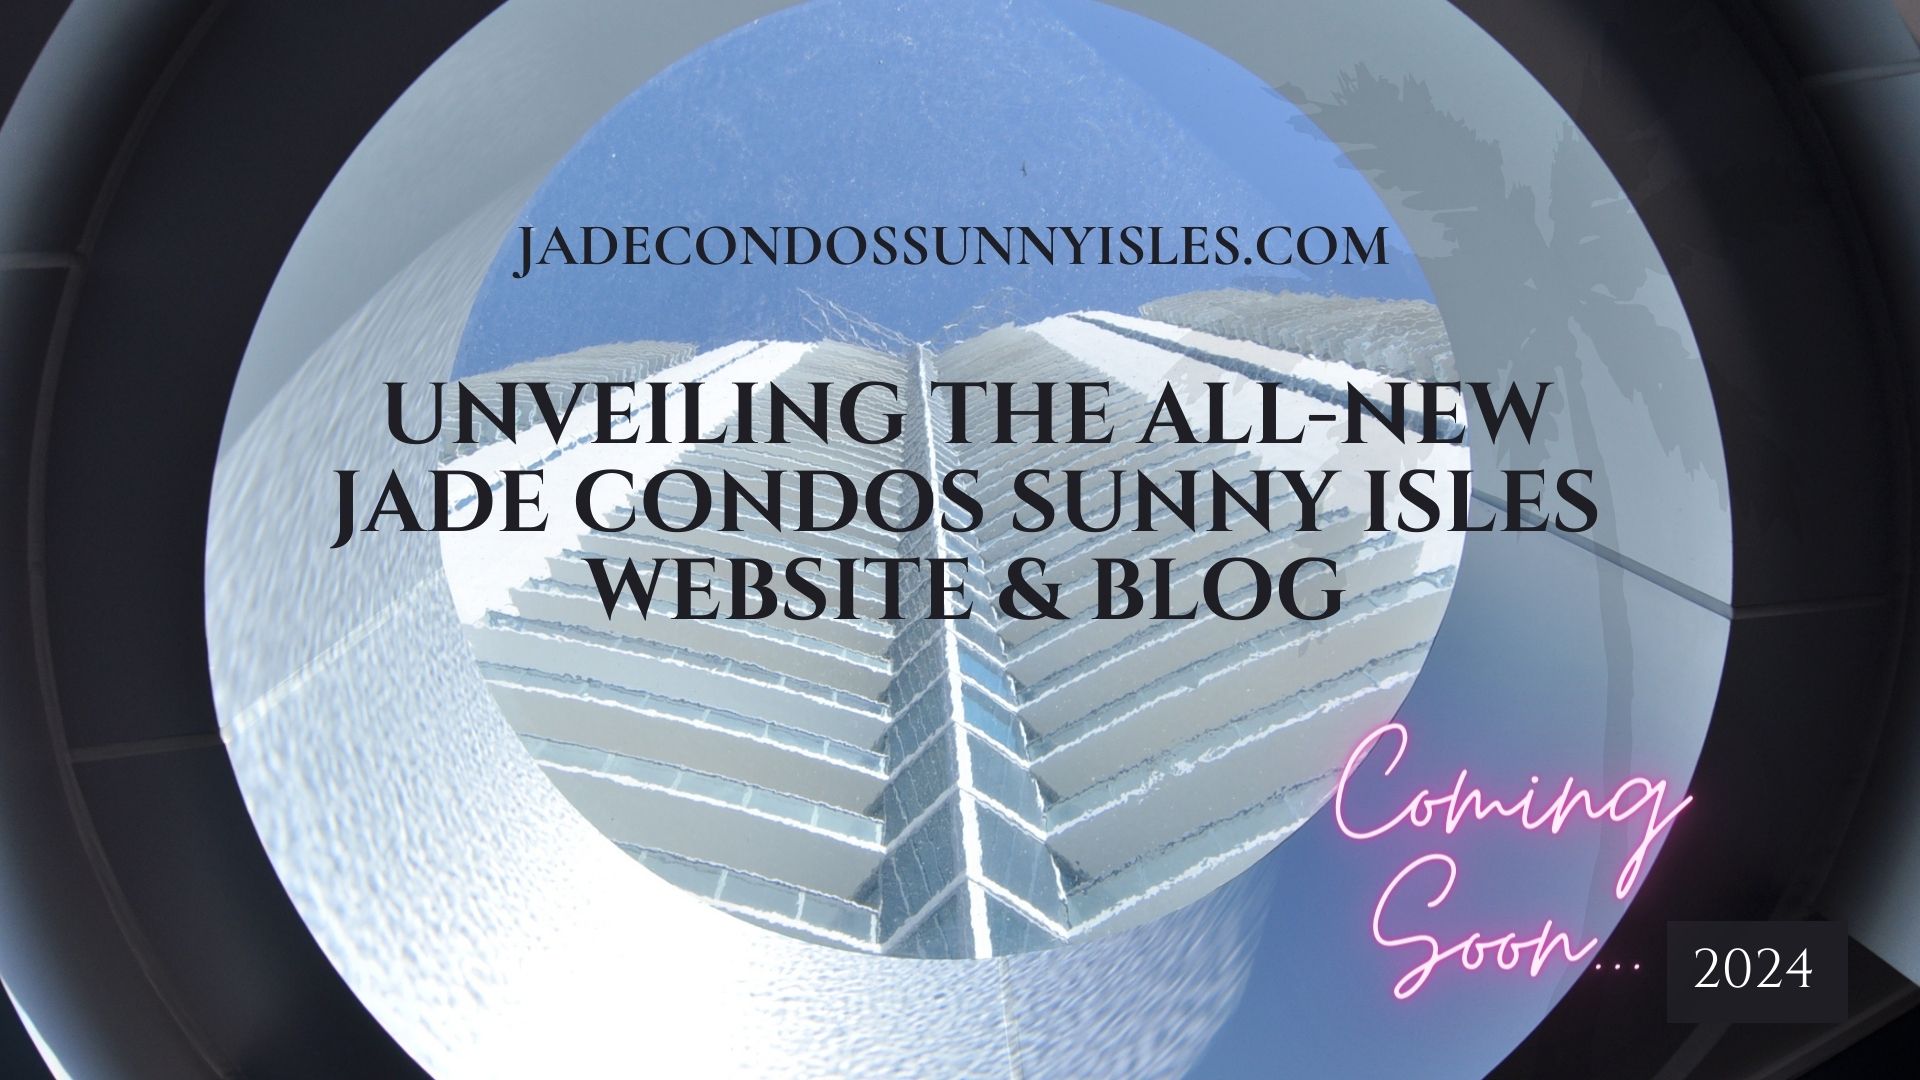 Jade Condo Website 2024